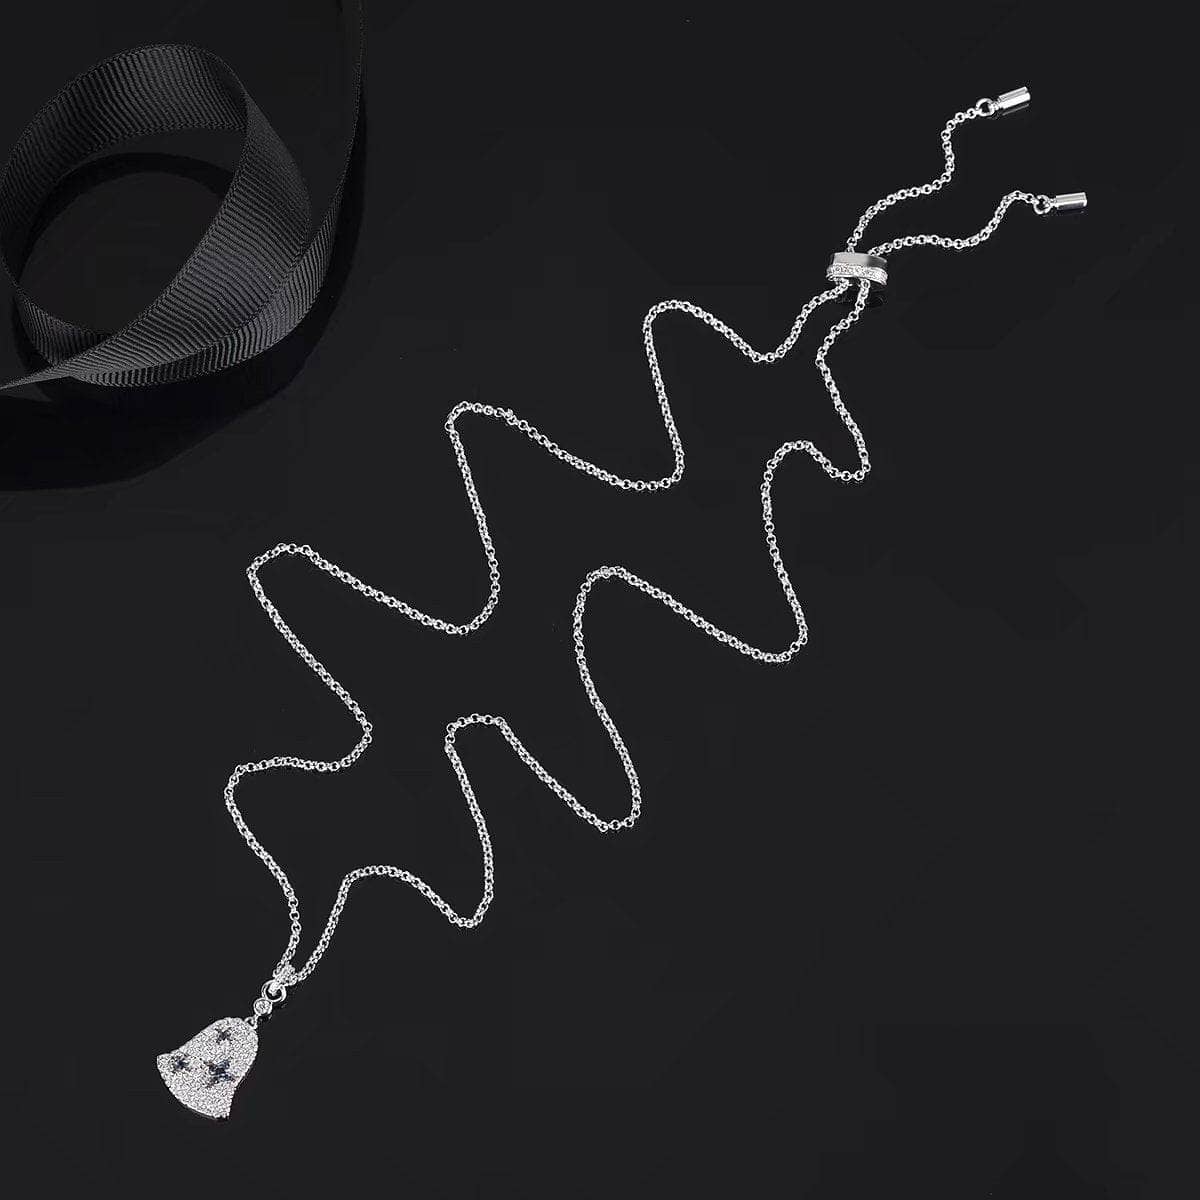 CVD Diamond Wind Bell Set Necklace